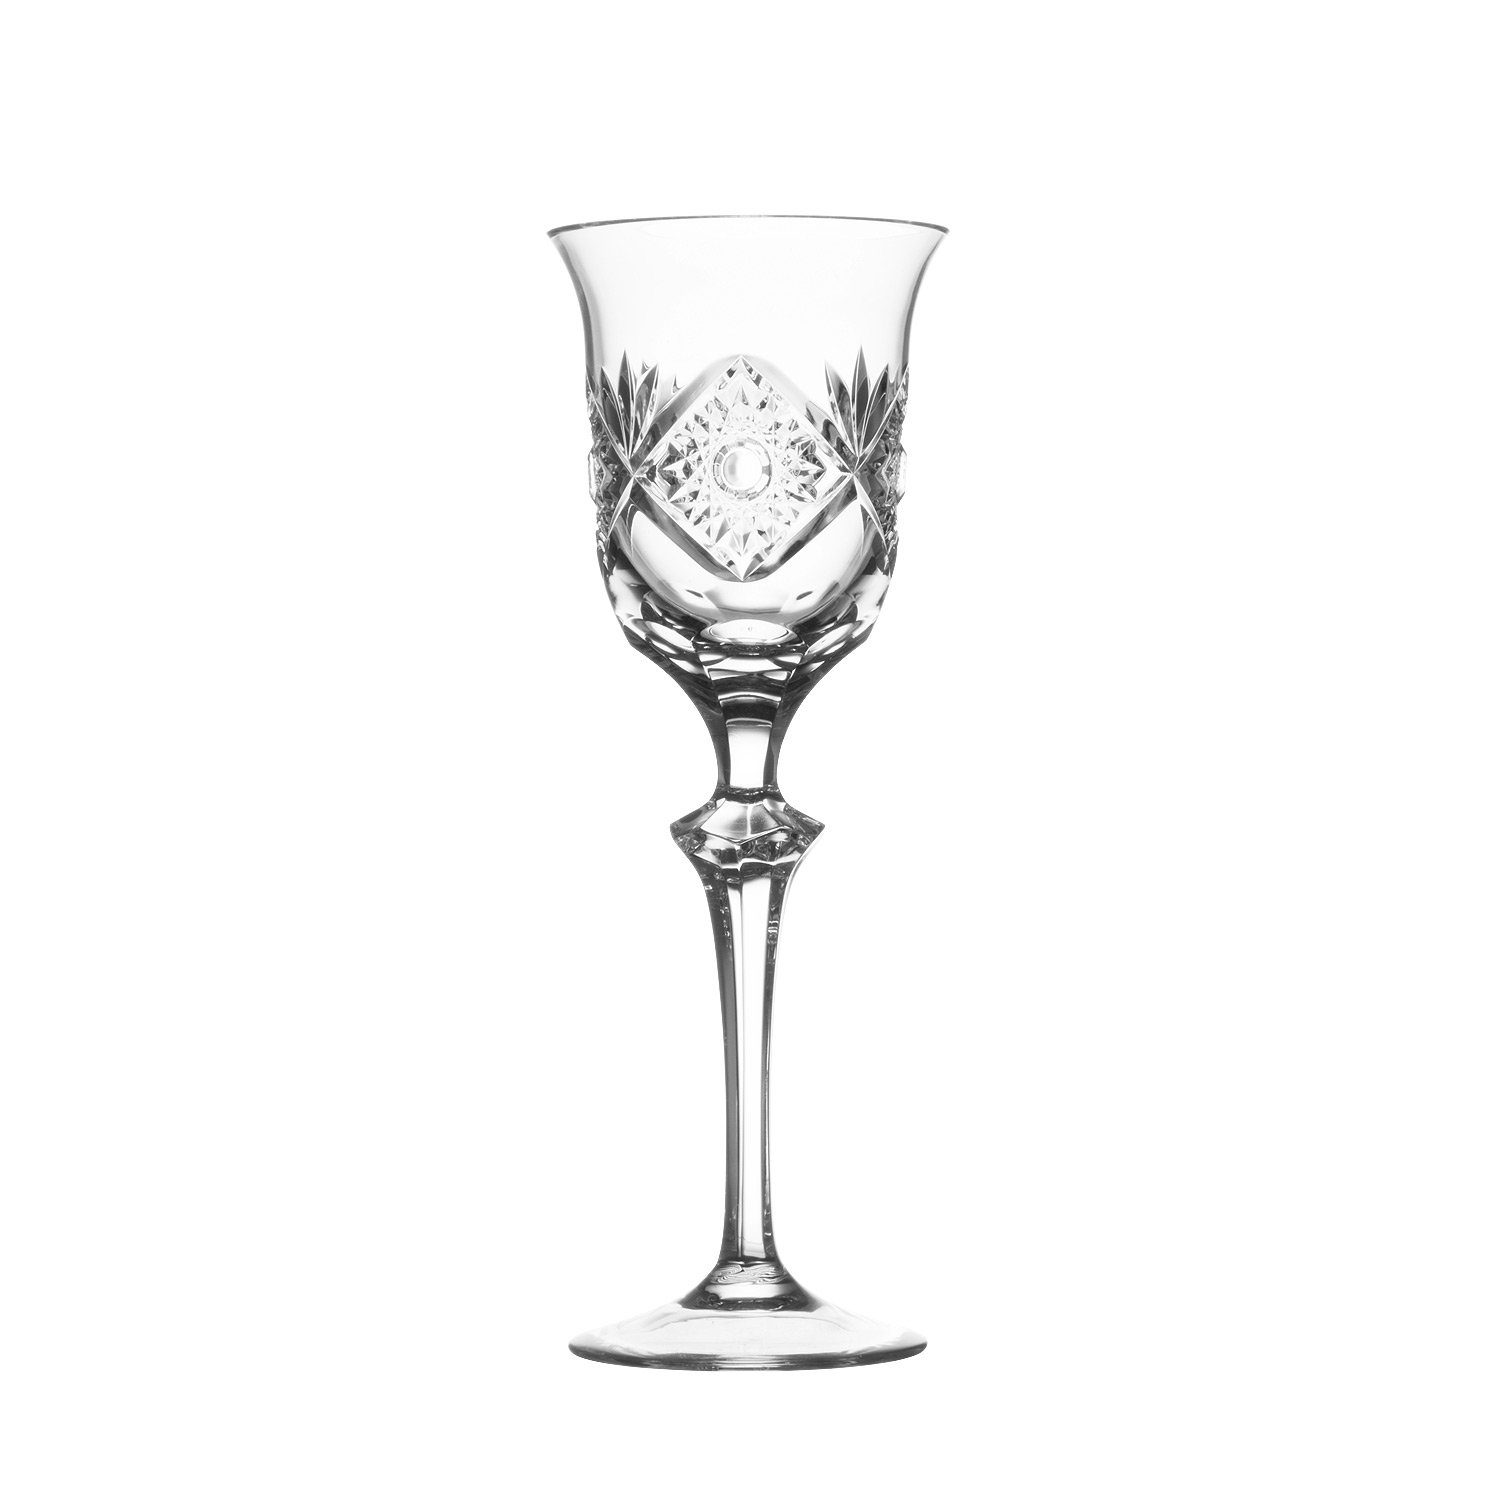 ARNSTADT KRISTALL Weinglas Santra clear (23,5 cm) - Kristallglas  mundgeblasen · handgeschliffen ·, Kristallglas